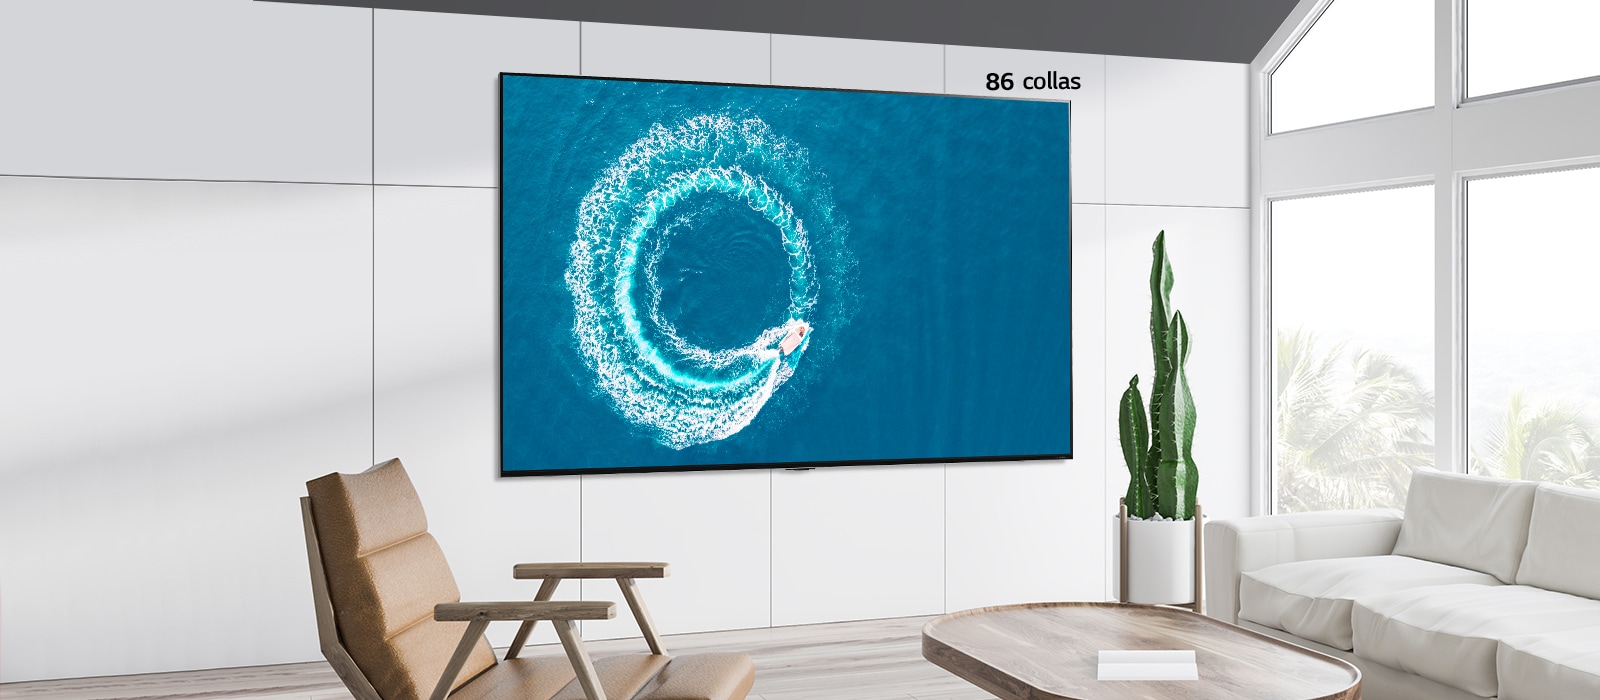 55 collu un 86 collu ekrāna salīdzinājums, kurā abi ekrāni piestiprināti pie sienas, un ekrānos attēlota laiva, kas šķeļ viļņus jūrā.